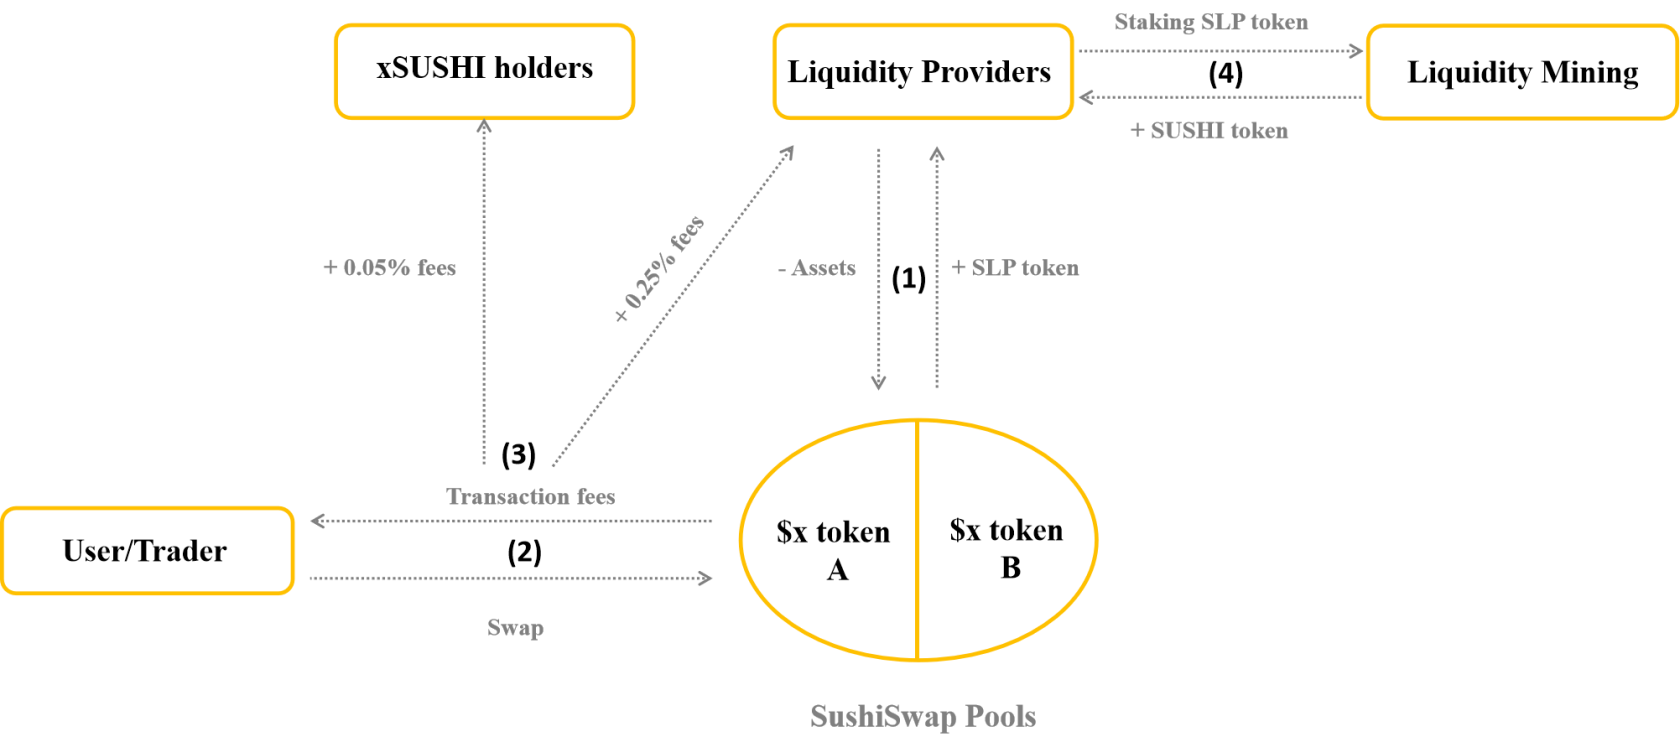 SushiSwap işletim modelinin analizi – Çoklu ürün modeli